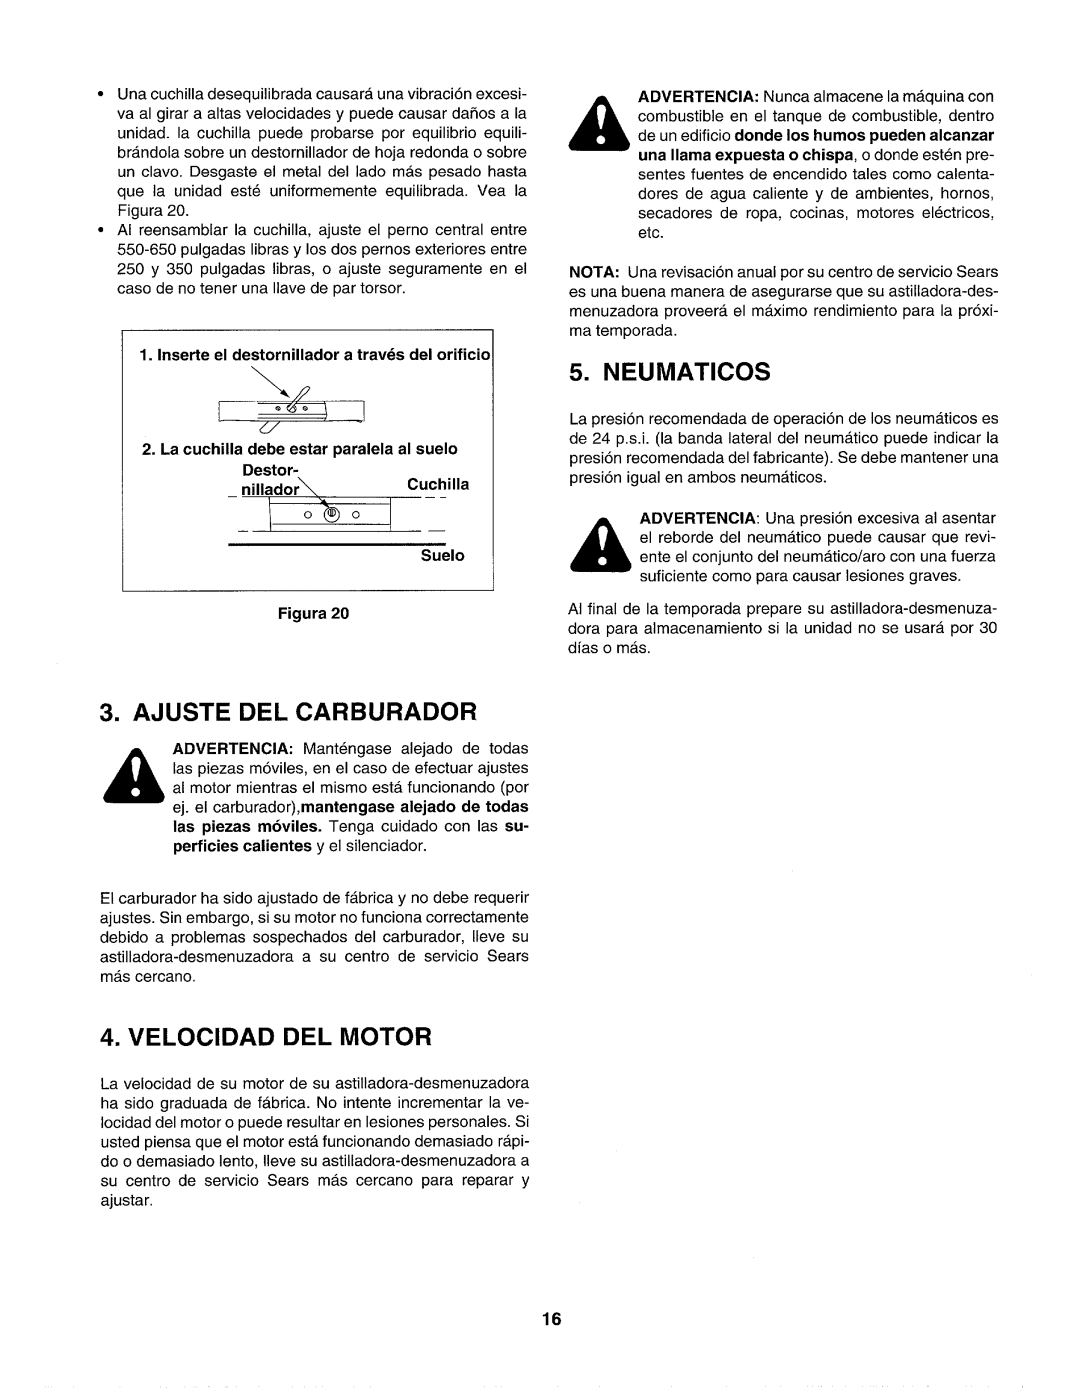 Craftsman 247.77586 manual Neumaticos, Ajuste Del Carburador, Velocidad Del Motor, Suelo Figura 